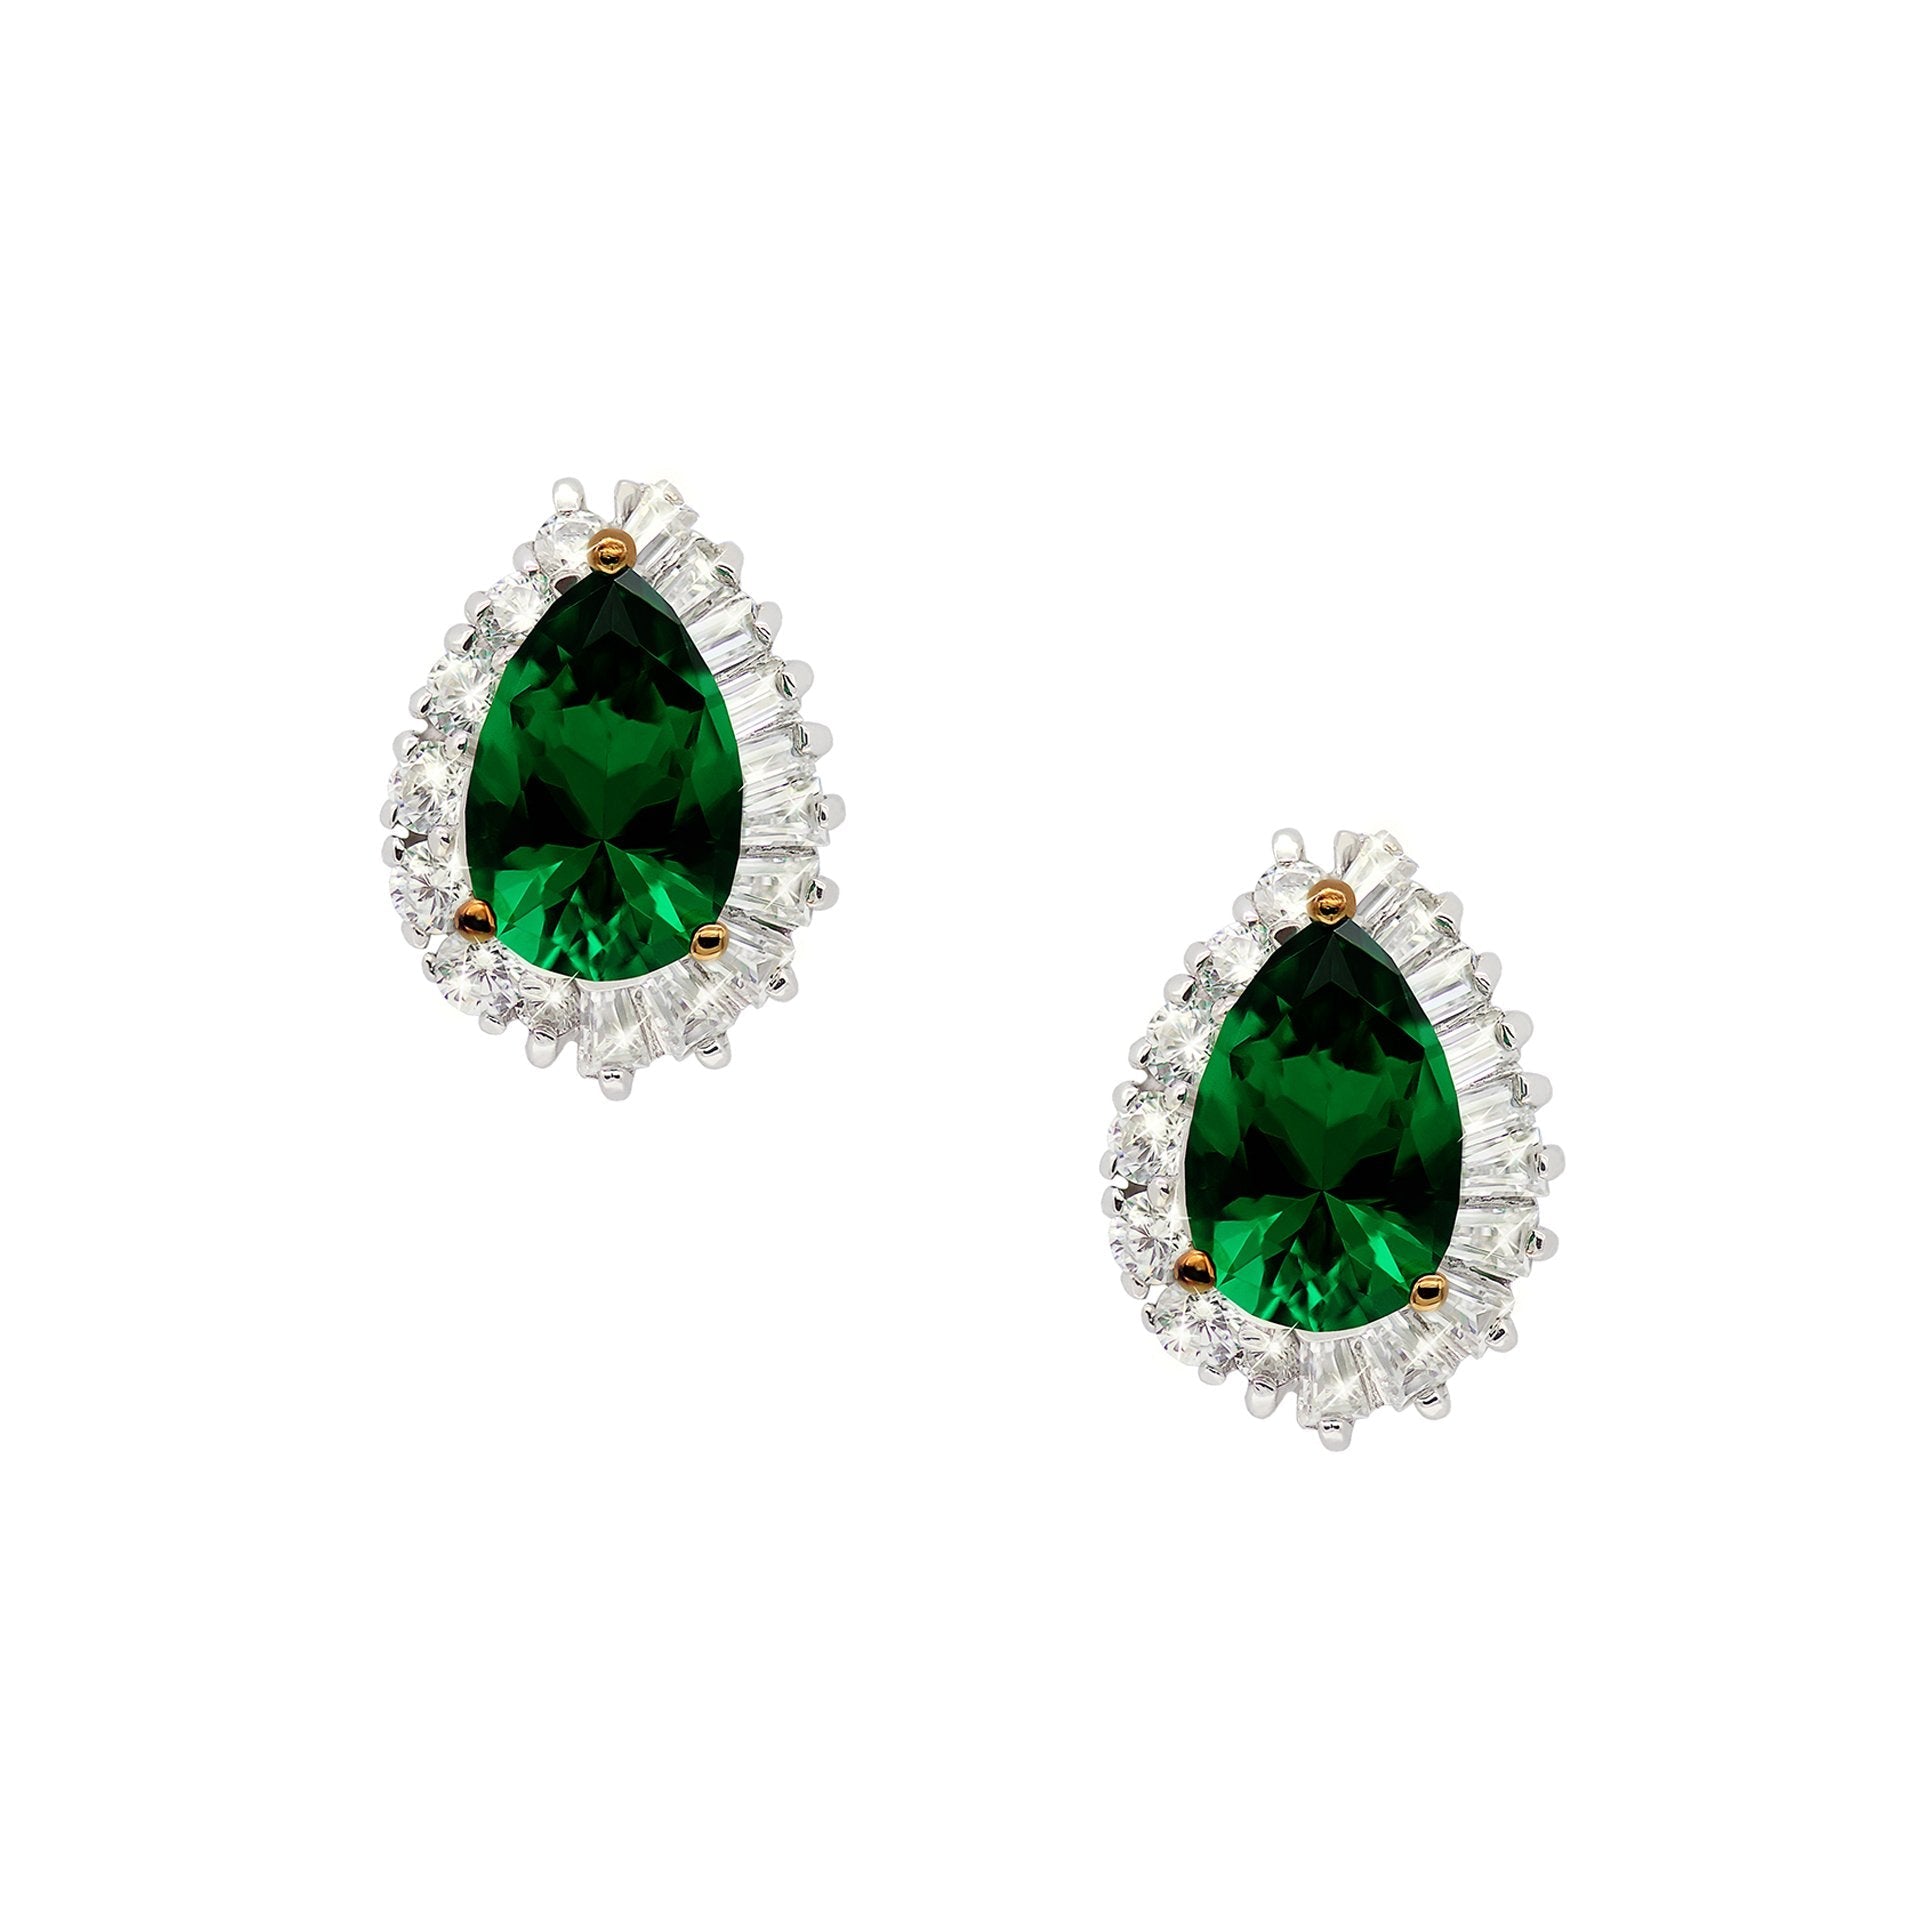 Sterling Silver Stud Earrings - Pear cut emerald green